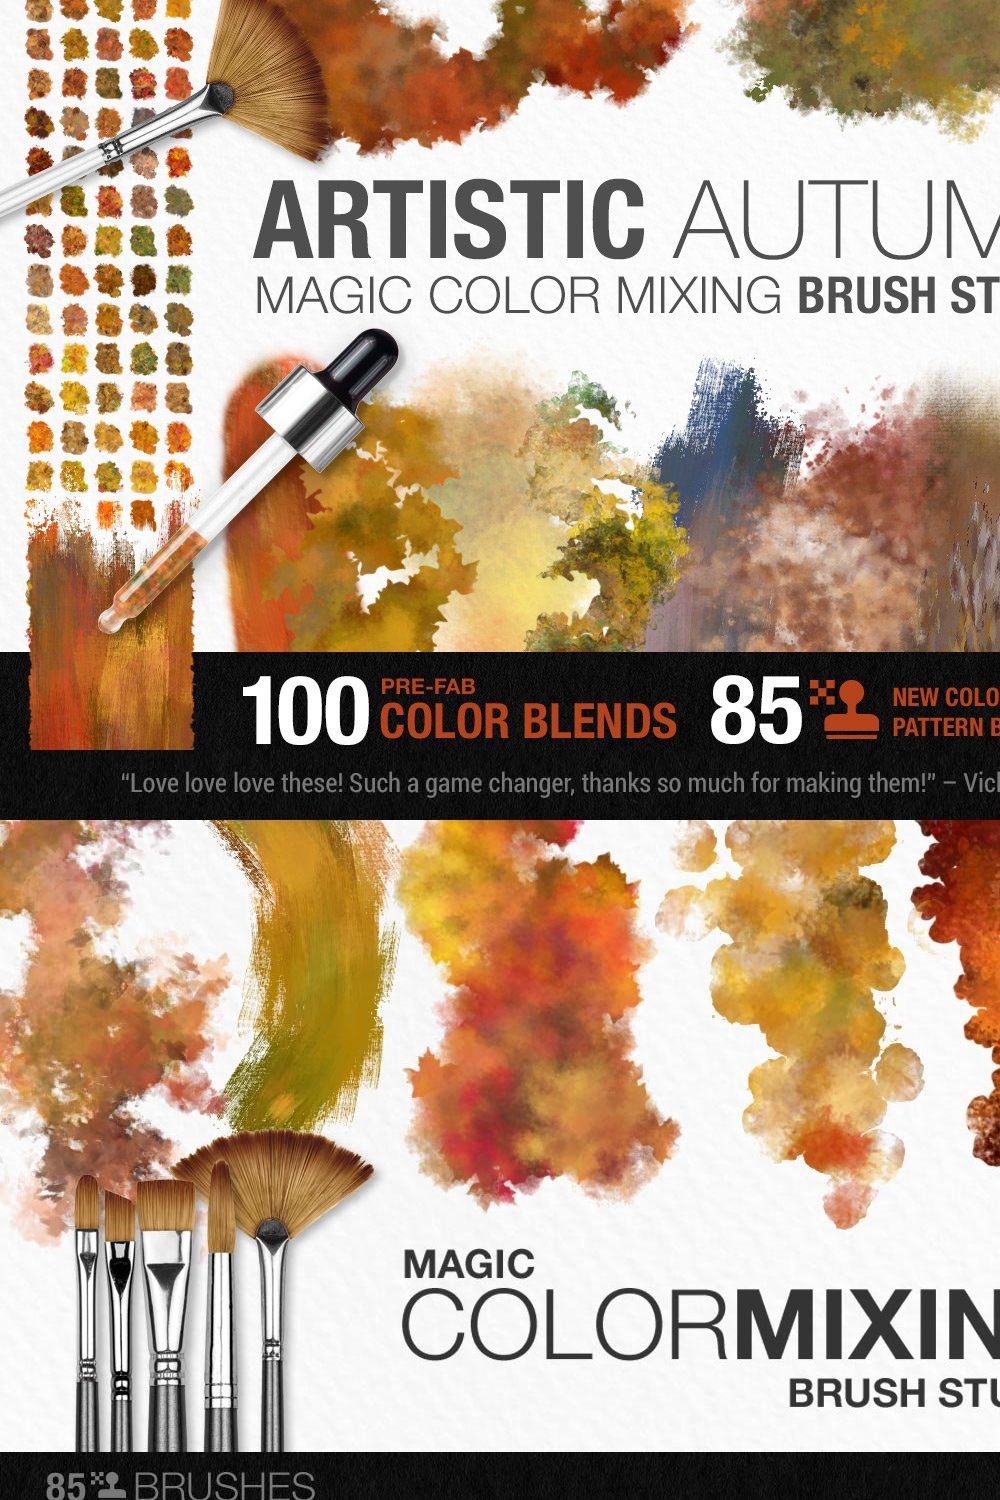 Artistic Autumn Paint Brush Studio pinterest preview image.